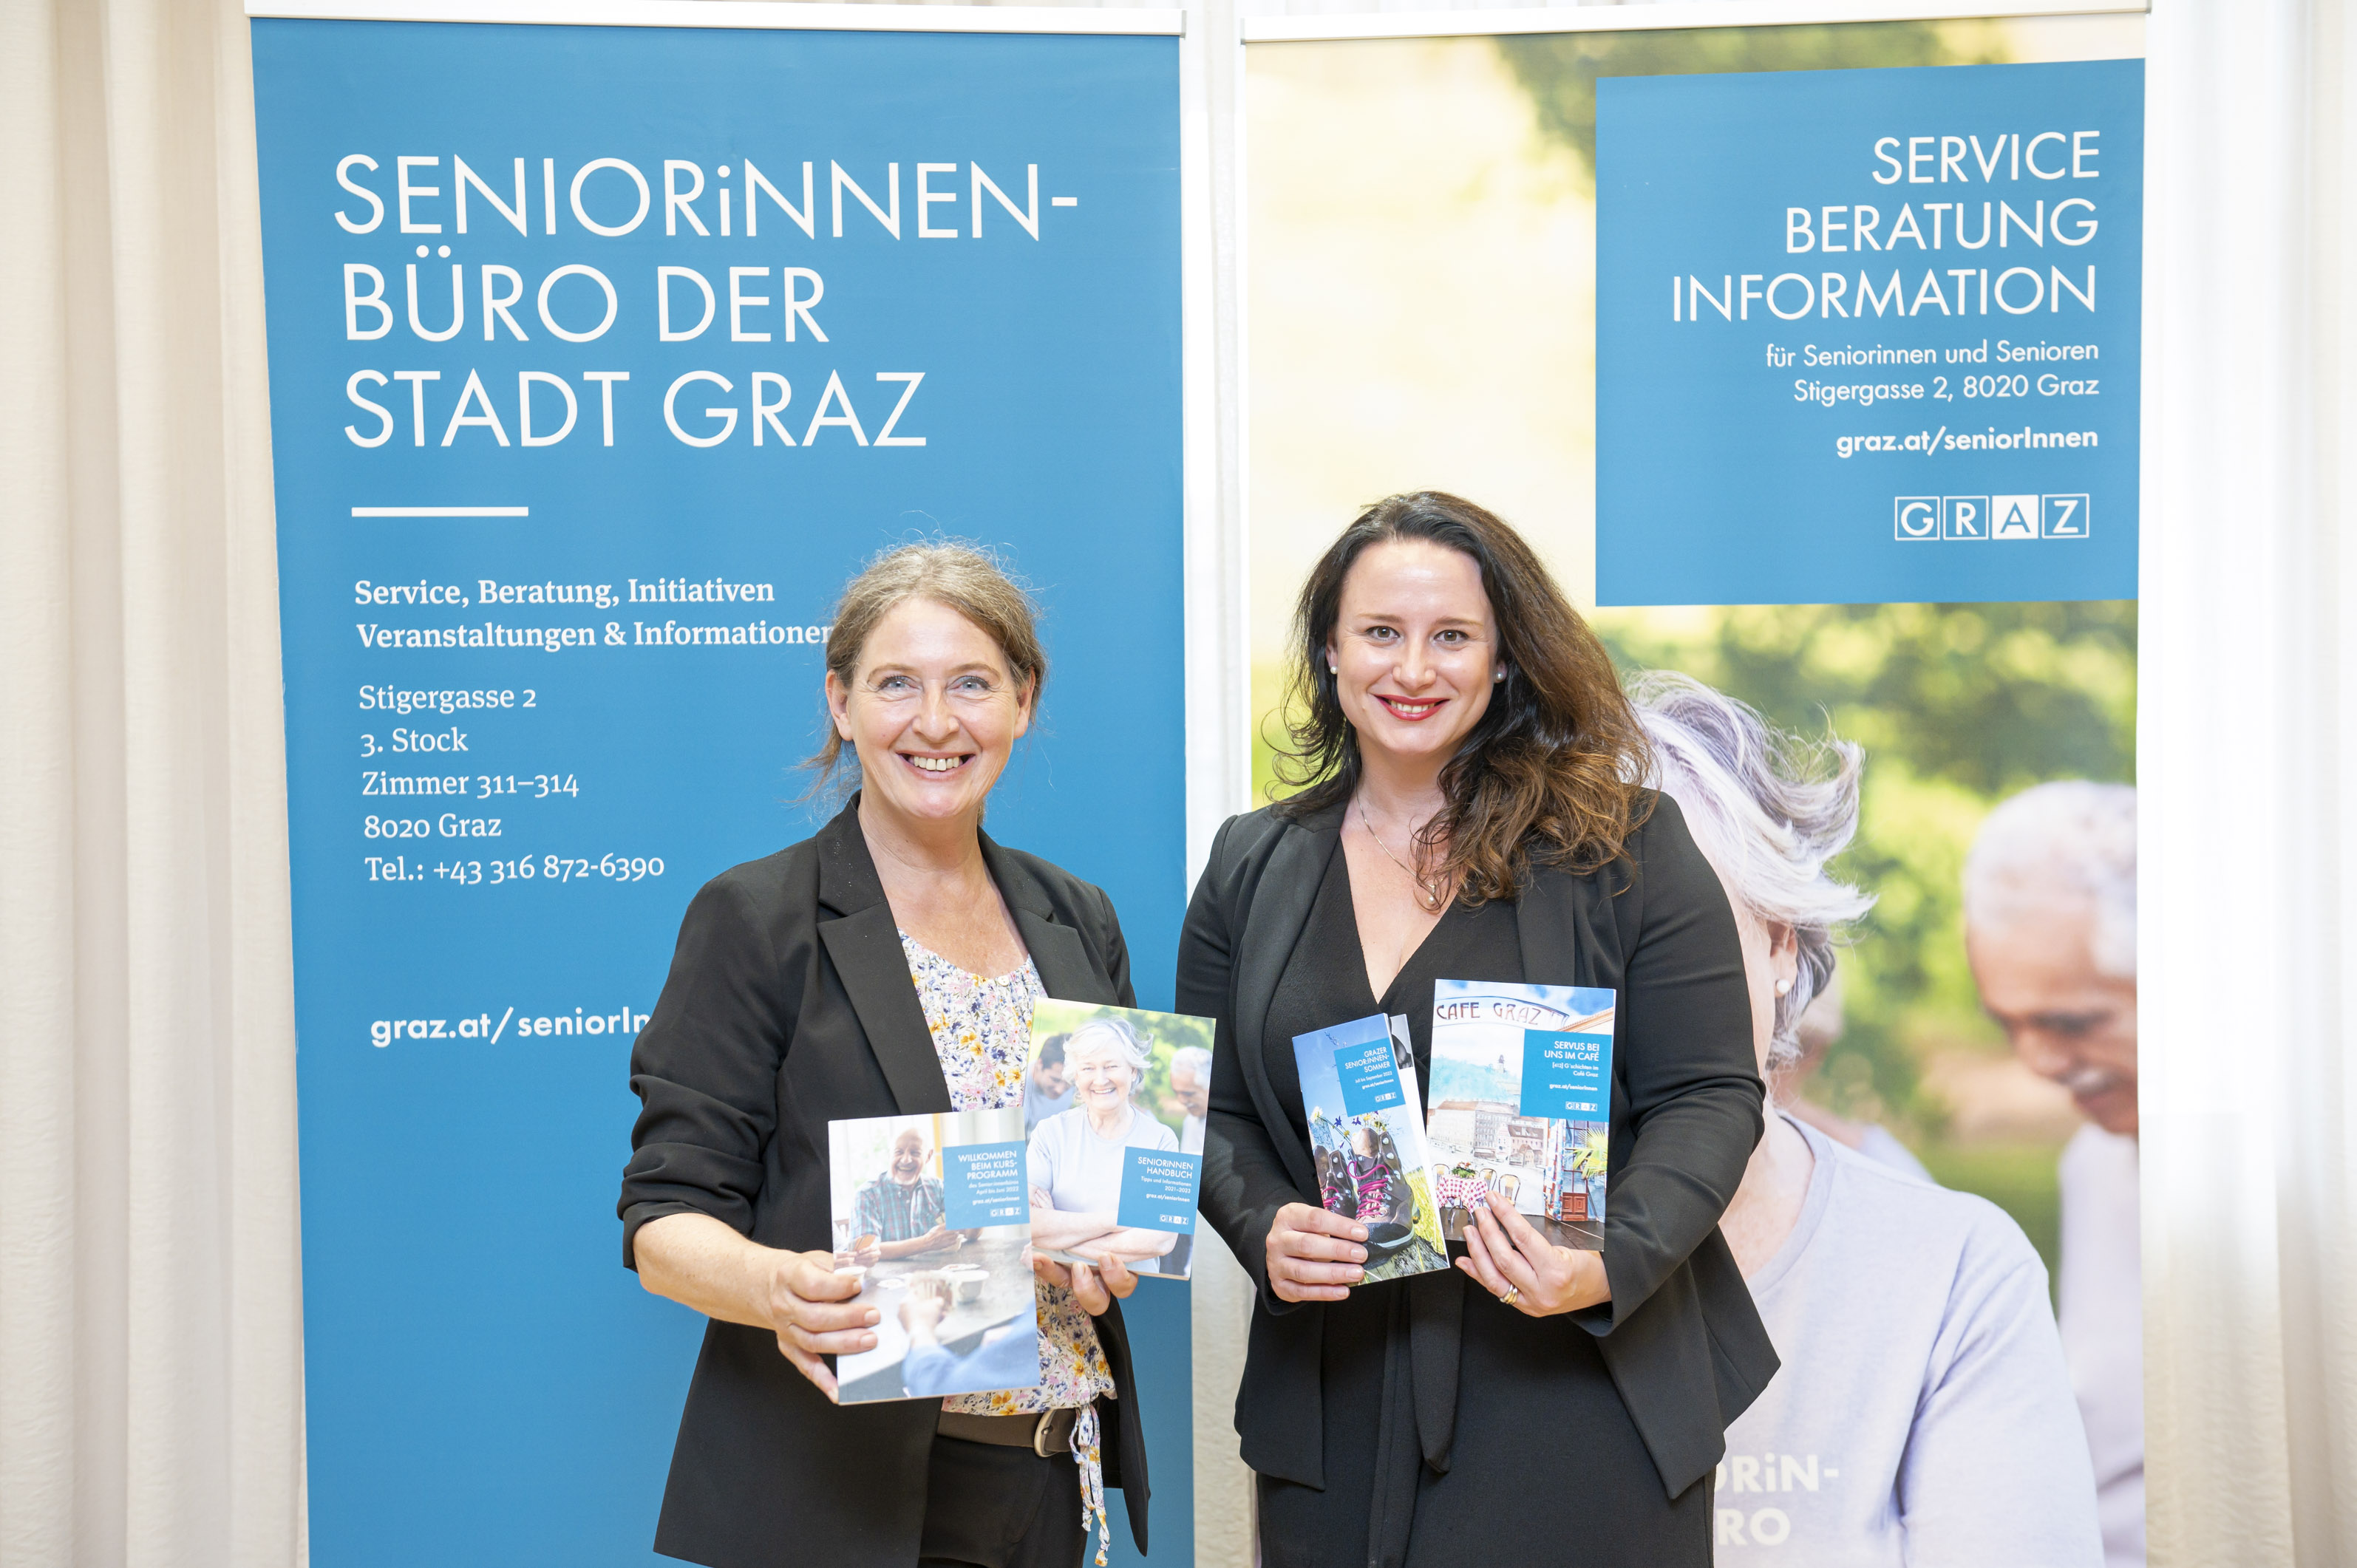 Bürgermeisterin Elke Kahr (l.) und Sandra Schimmler vom Sozialamt präsentierten das neue Senior:innenprogramm.